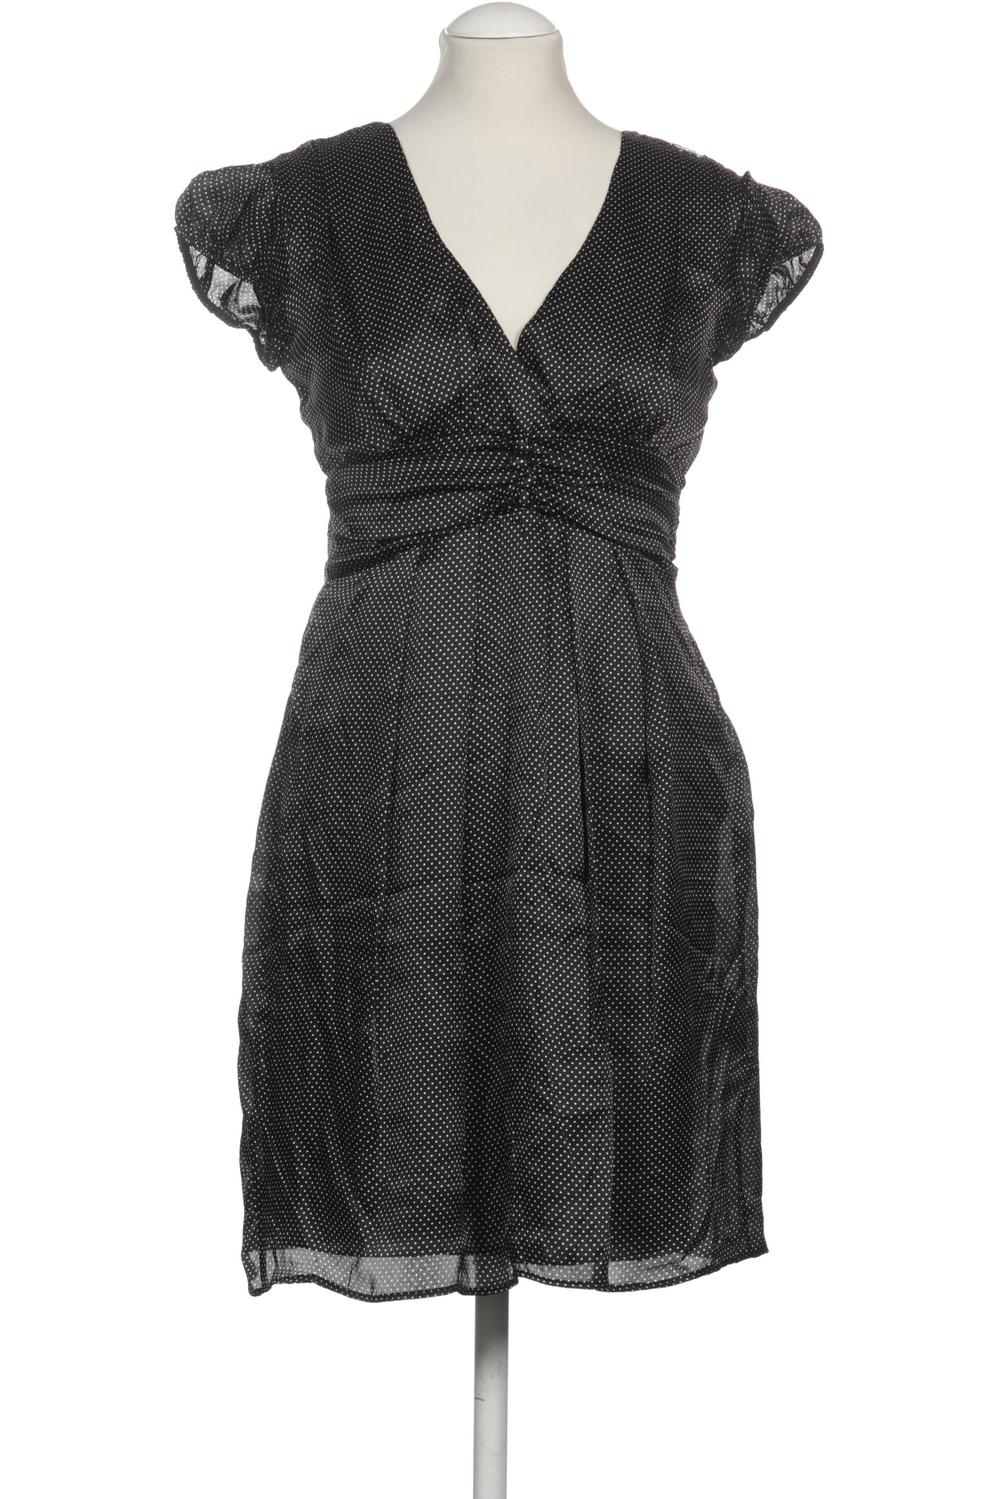 Miss Sixty Damen Kleid INT M Second Hand kaufen | ubup